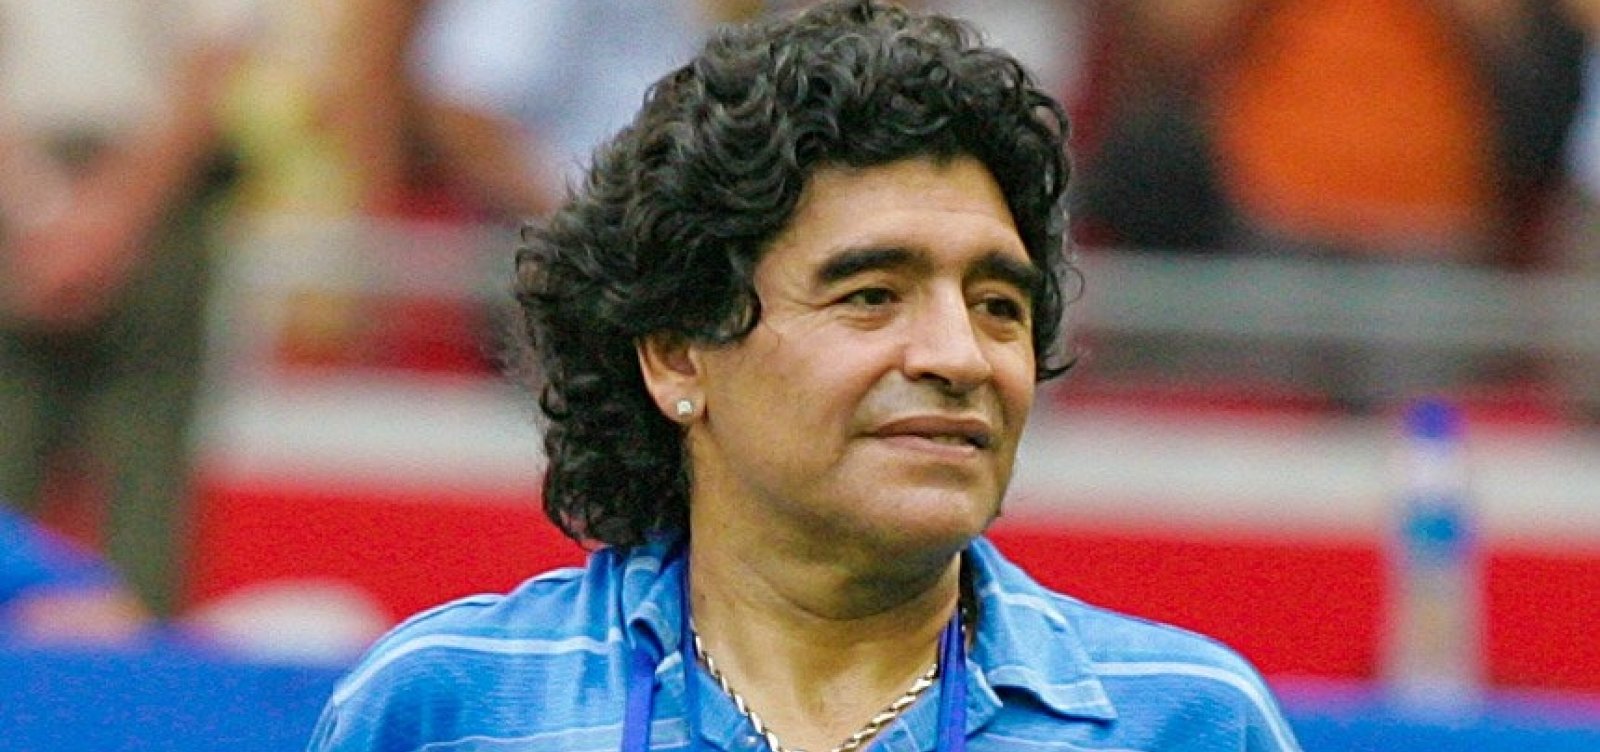 Justiça argentina investiga se houve negligência na morte de Maradona